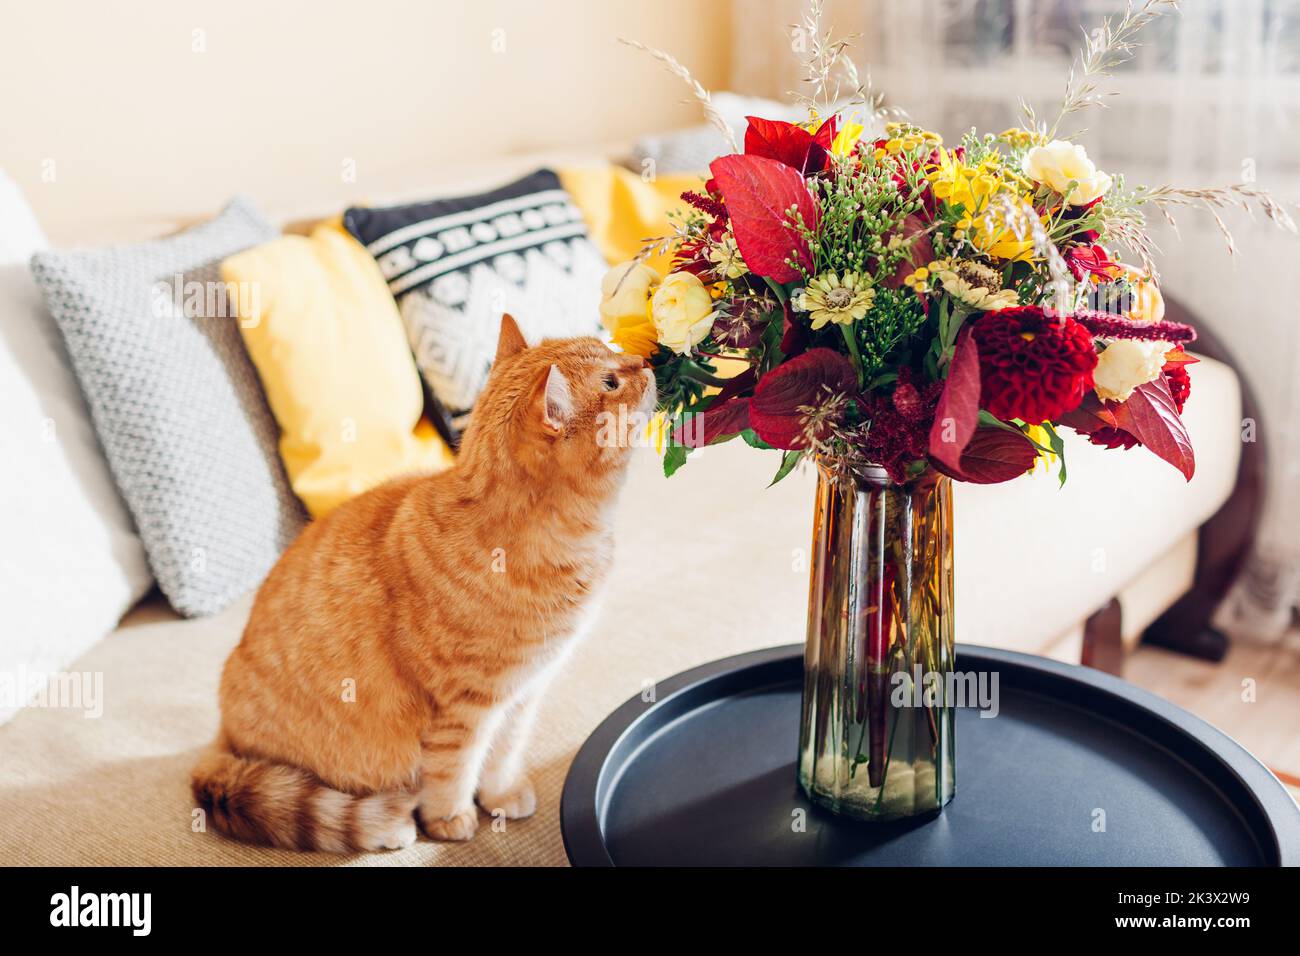 Chat au gingembre sentant un bouquet de fleurs de couleur automnale mis dans un vase sur une table. Curieux animal aime le parfum des plantes Banque D'Images